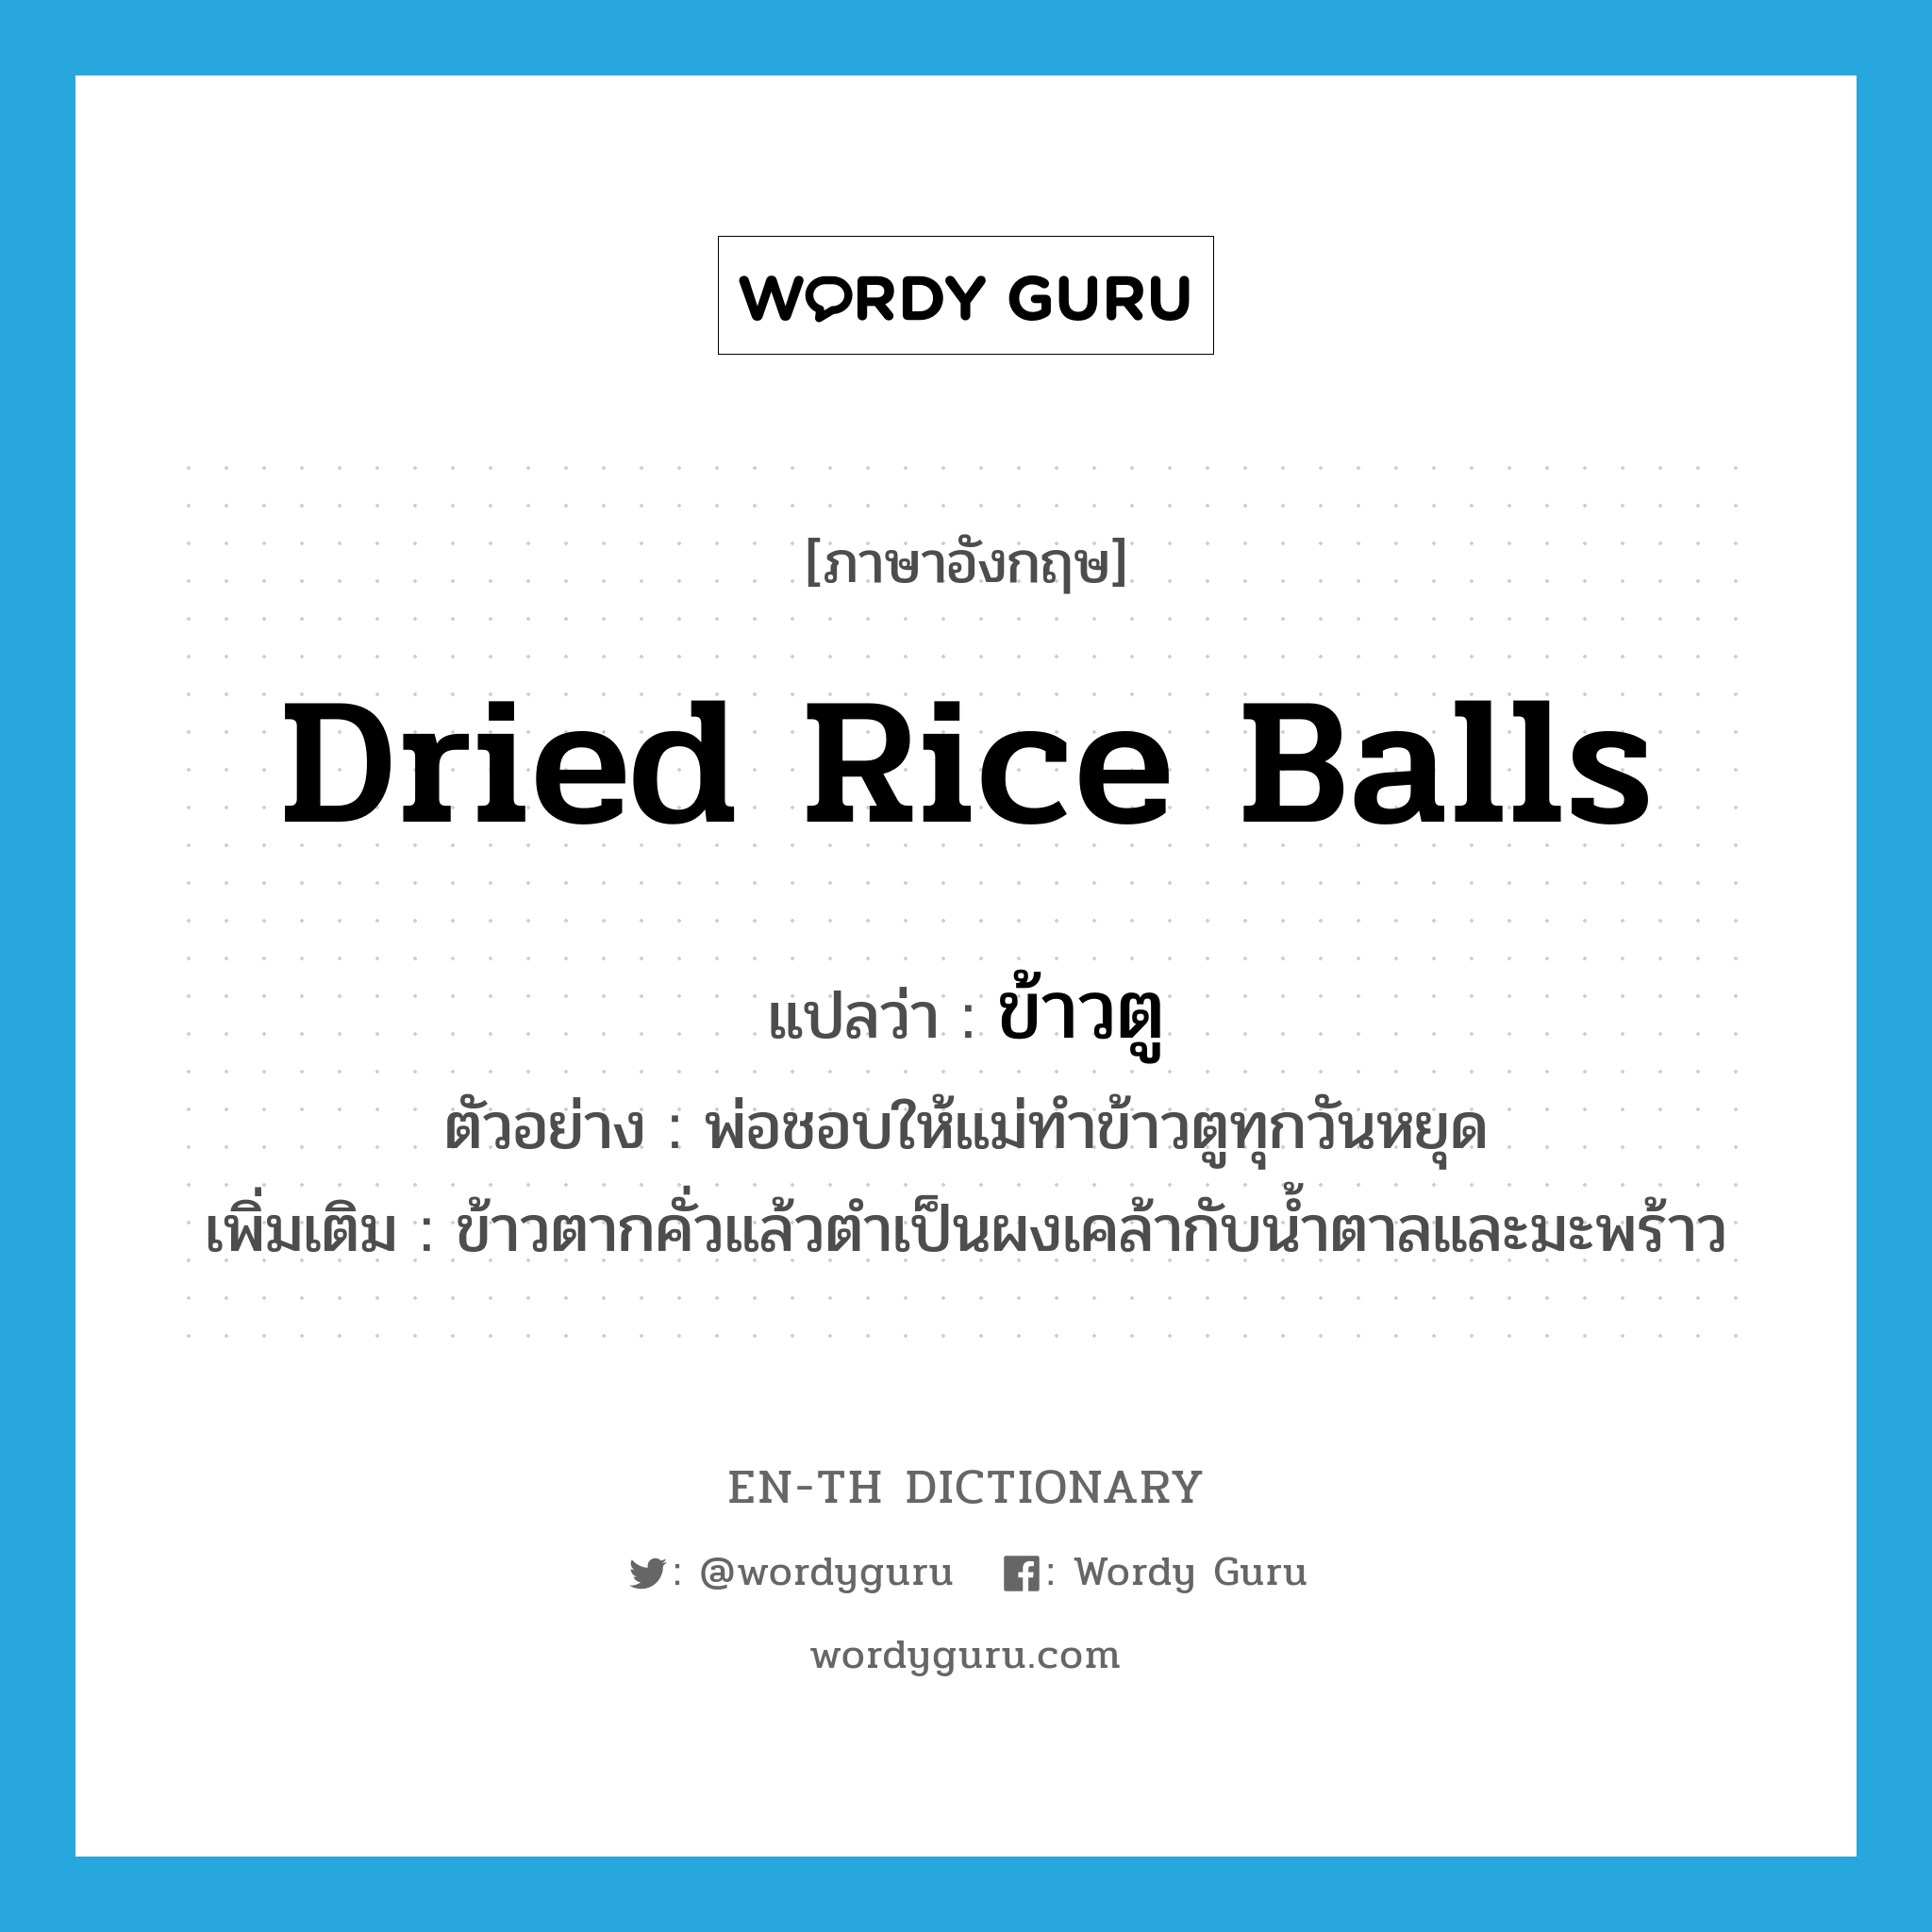 dried rice balls แปลว่า?, คำศัพท์ภาษาอังกฤษ dried rice balls แปลว่า ข้าวตู ประเภท N ตัวอย่าง พ่อชอบให้แม่ทำข้าวตูทุกวันหยุด เพิ่มเติม ข้าวตากคั่วแล้วตำเป็นผงเคล้ากับน้ำตาลและมะพร้าว หมวด N